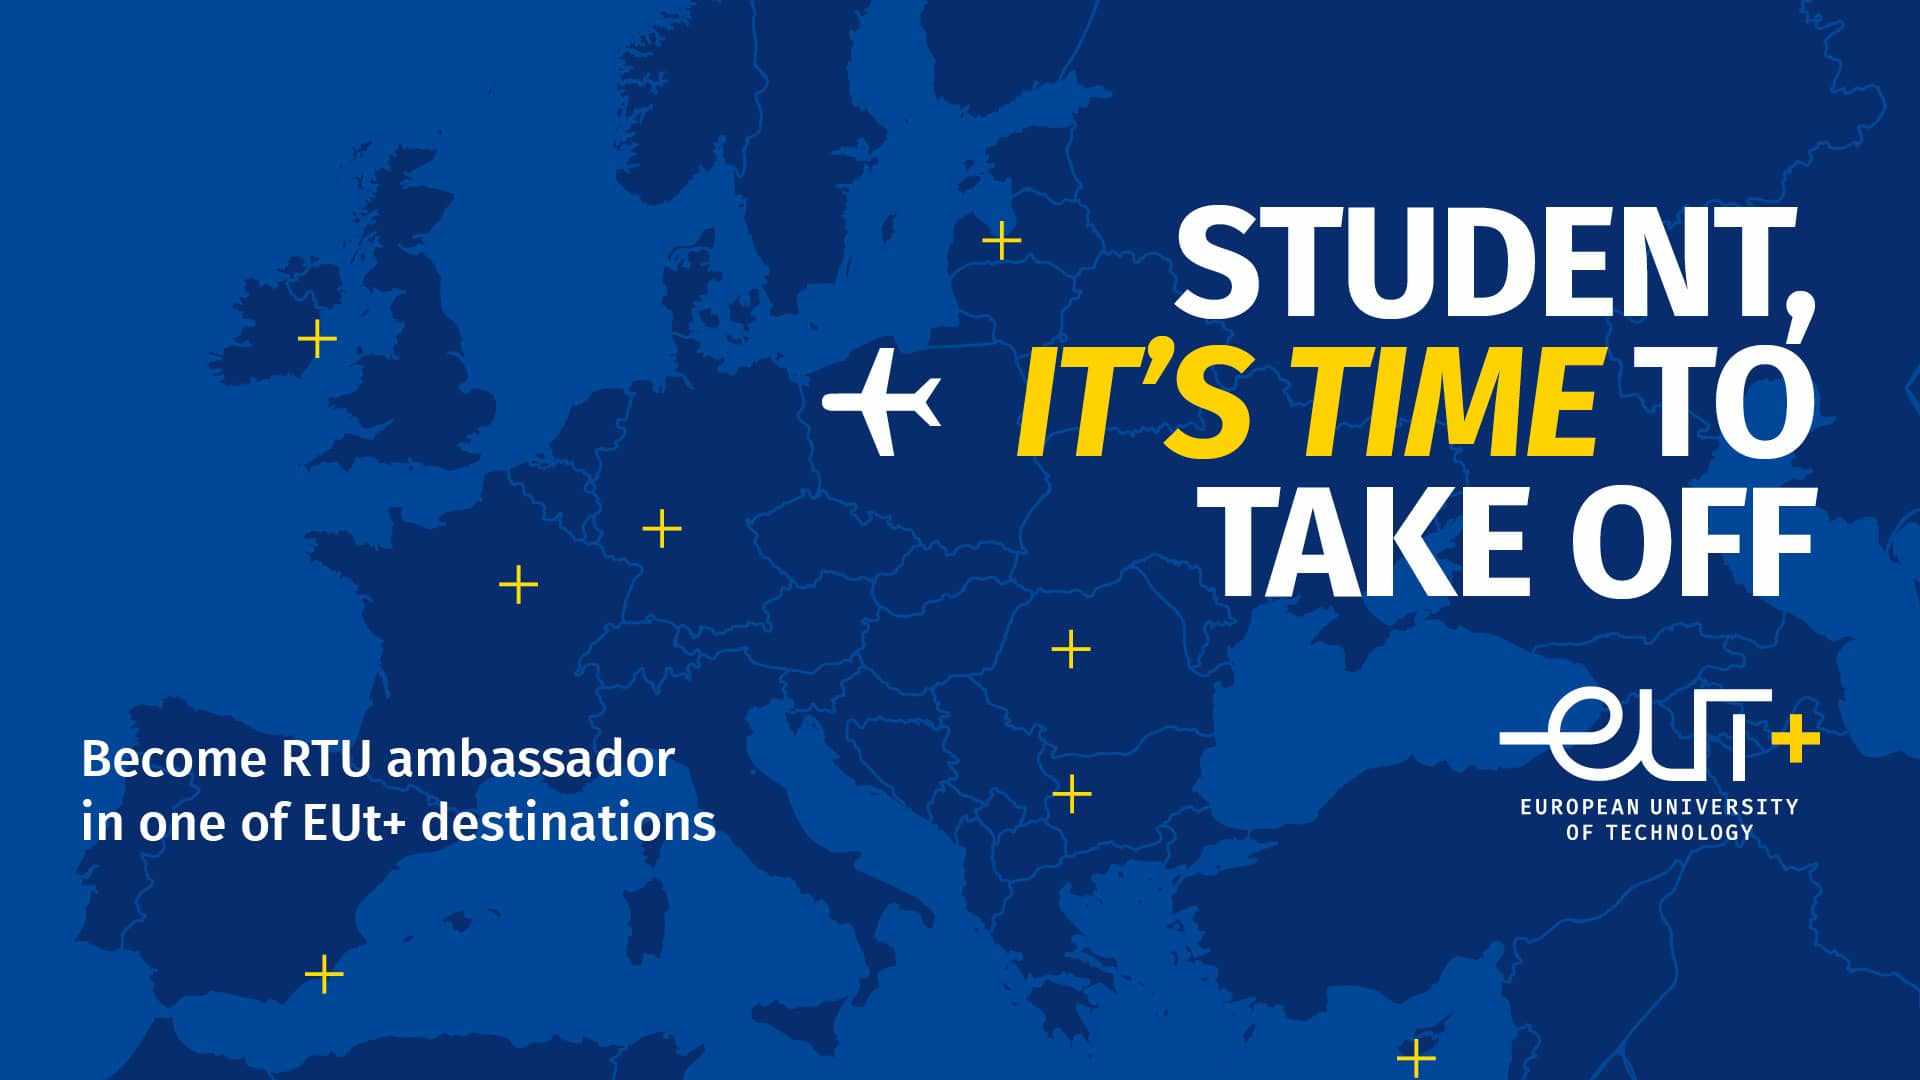 RTU studentus aicina pieteikties Erasmus+ stipendijai Eiropas Tehnoloģiju universitātē